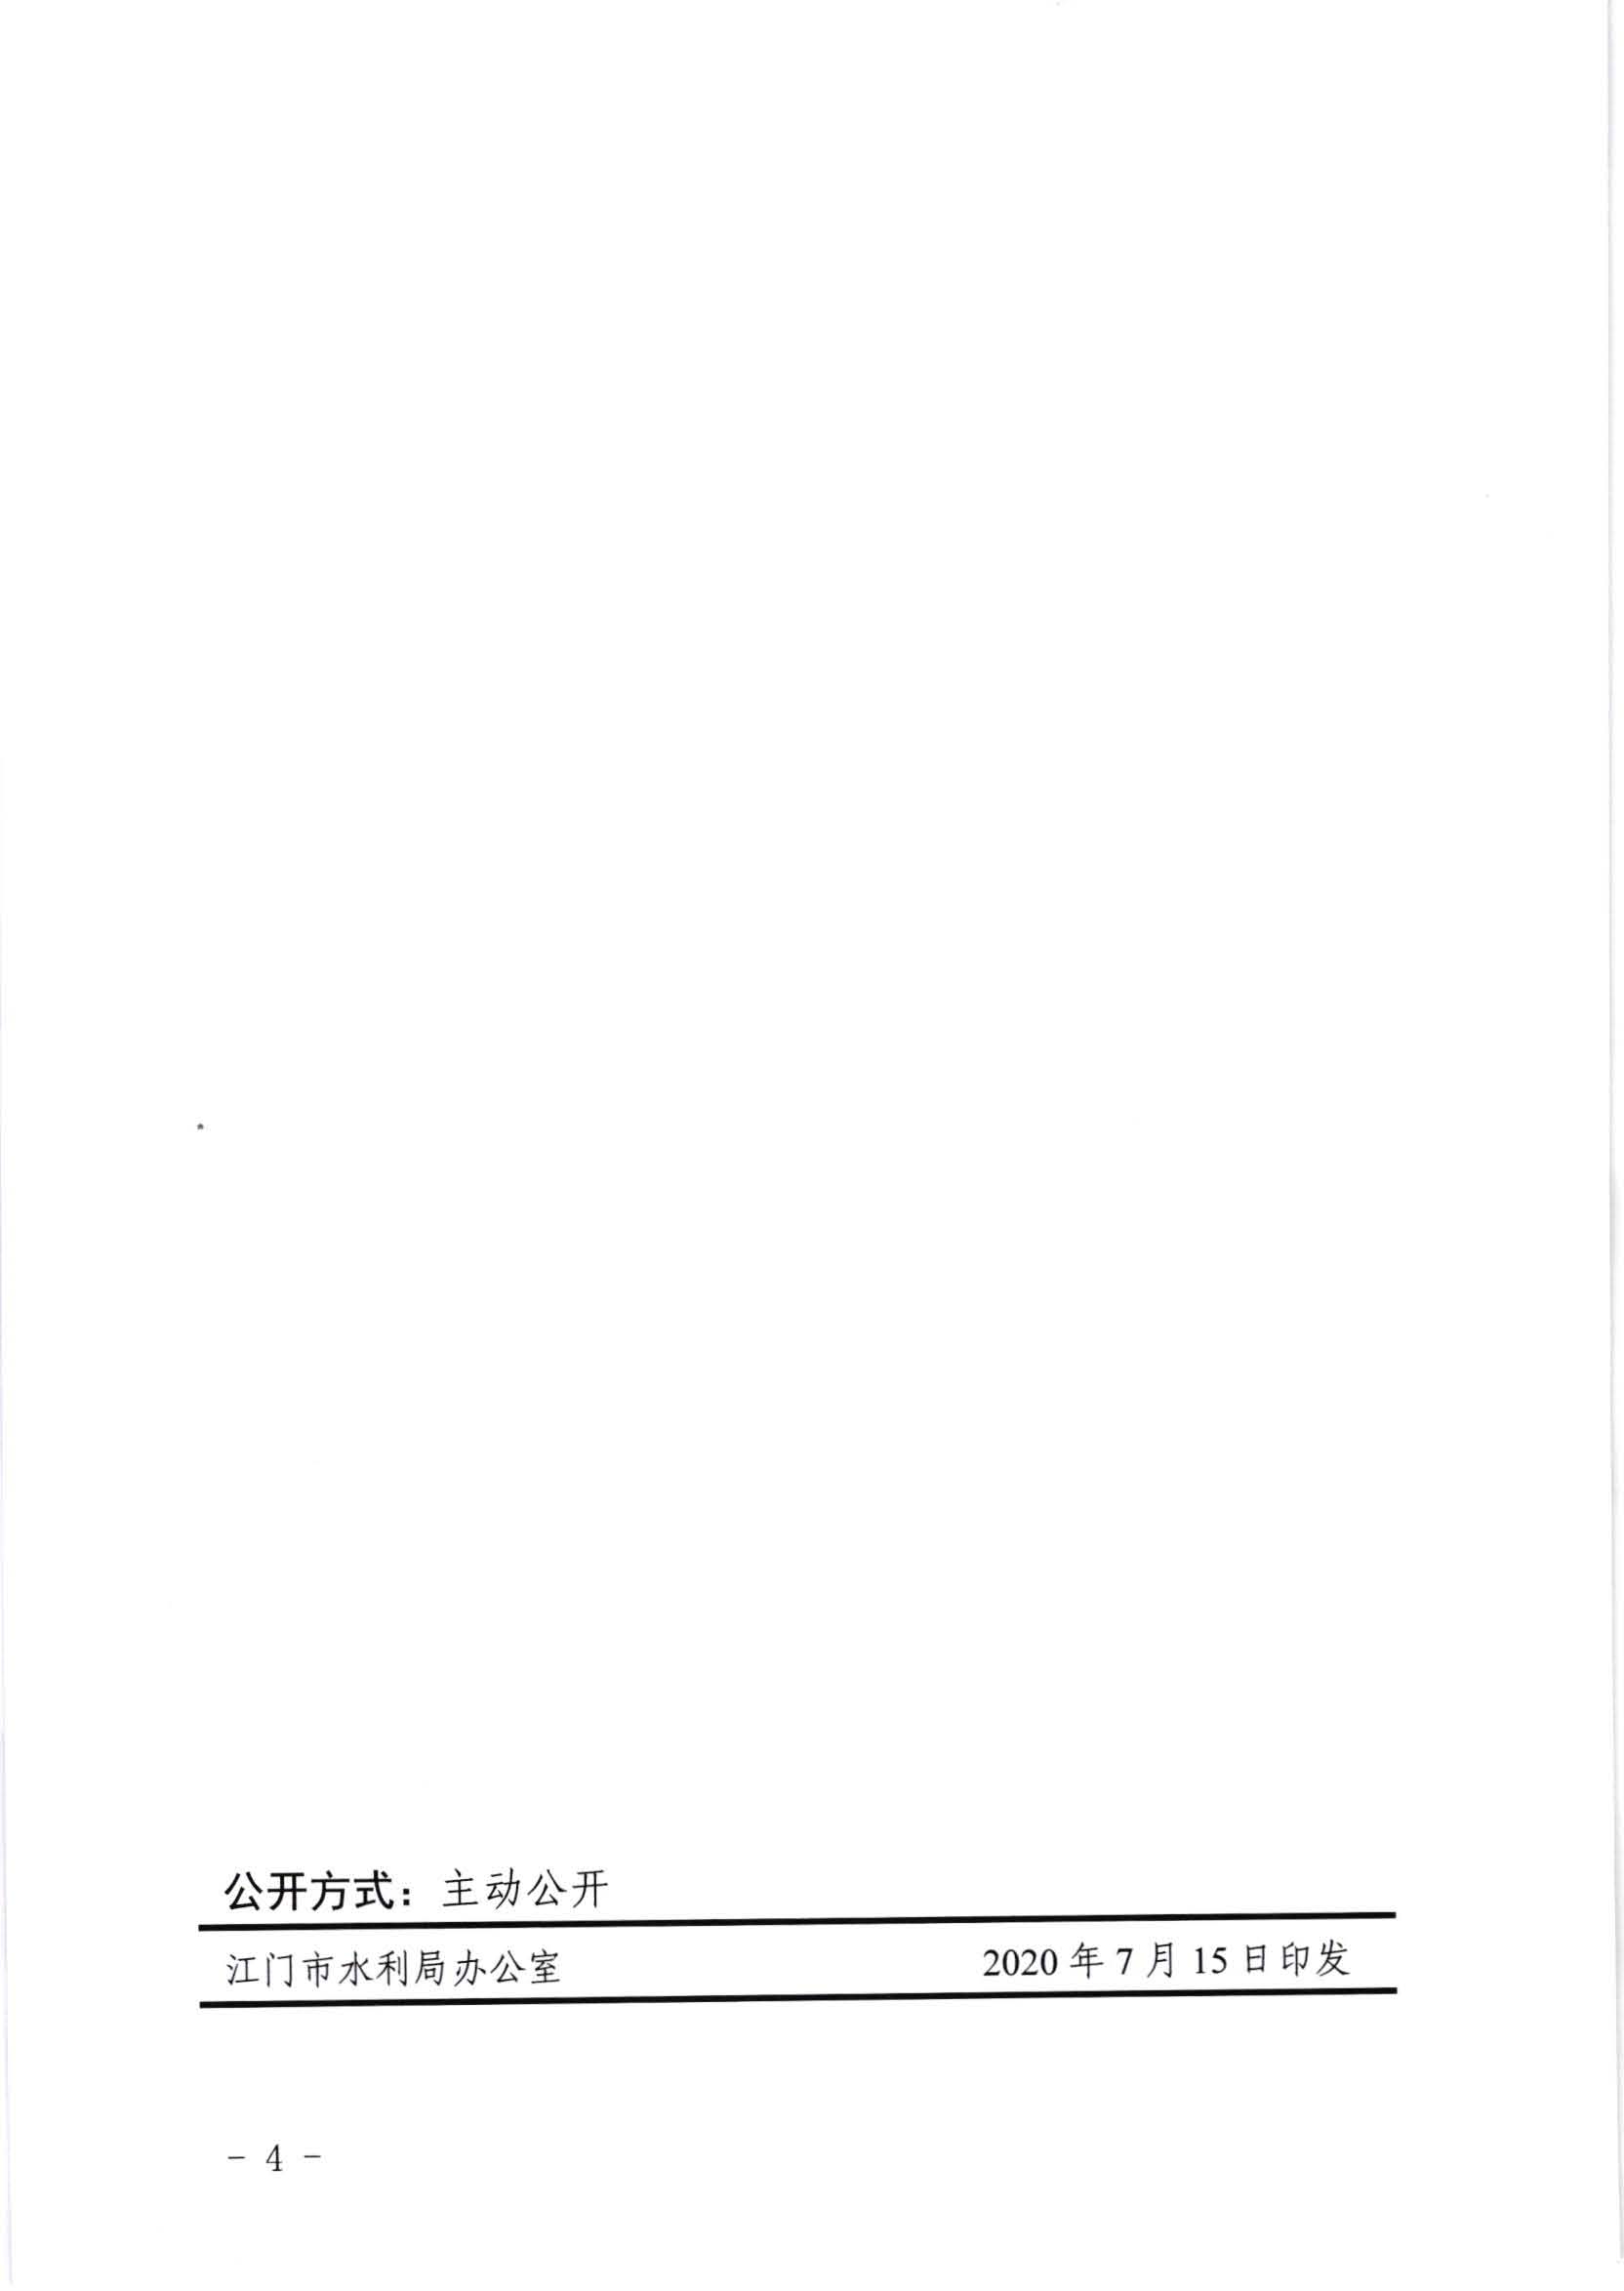 江水[2020]269号_江门市水利局关于委托行政审批事项和管理事权的通知_页面_4.jpg